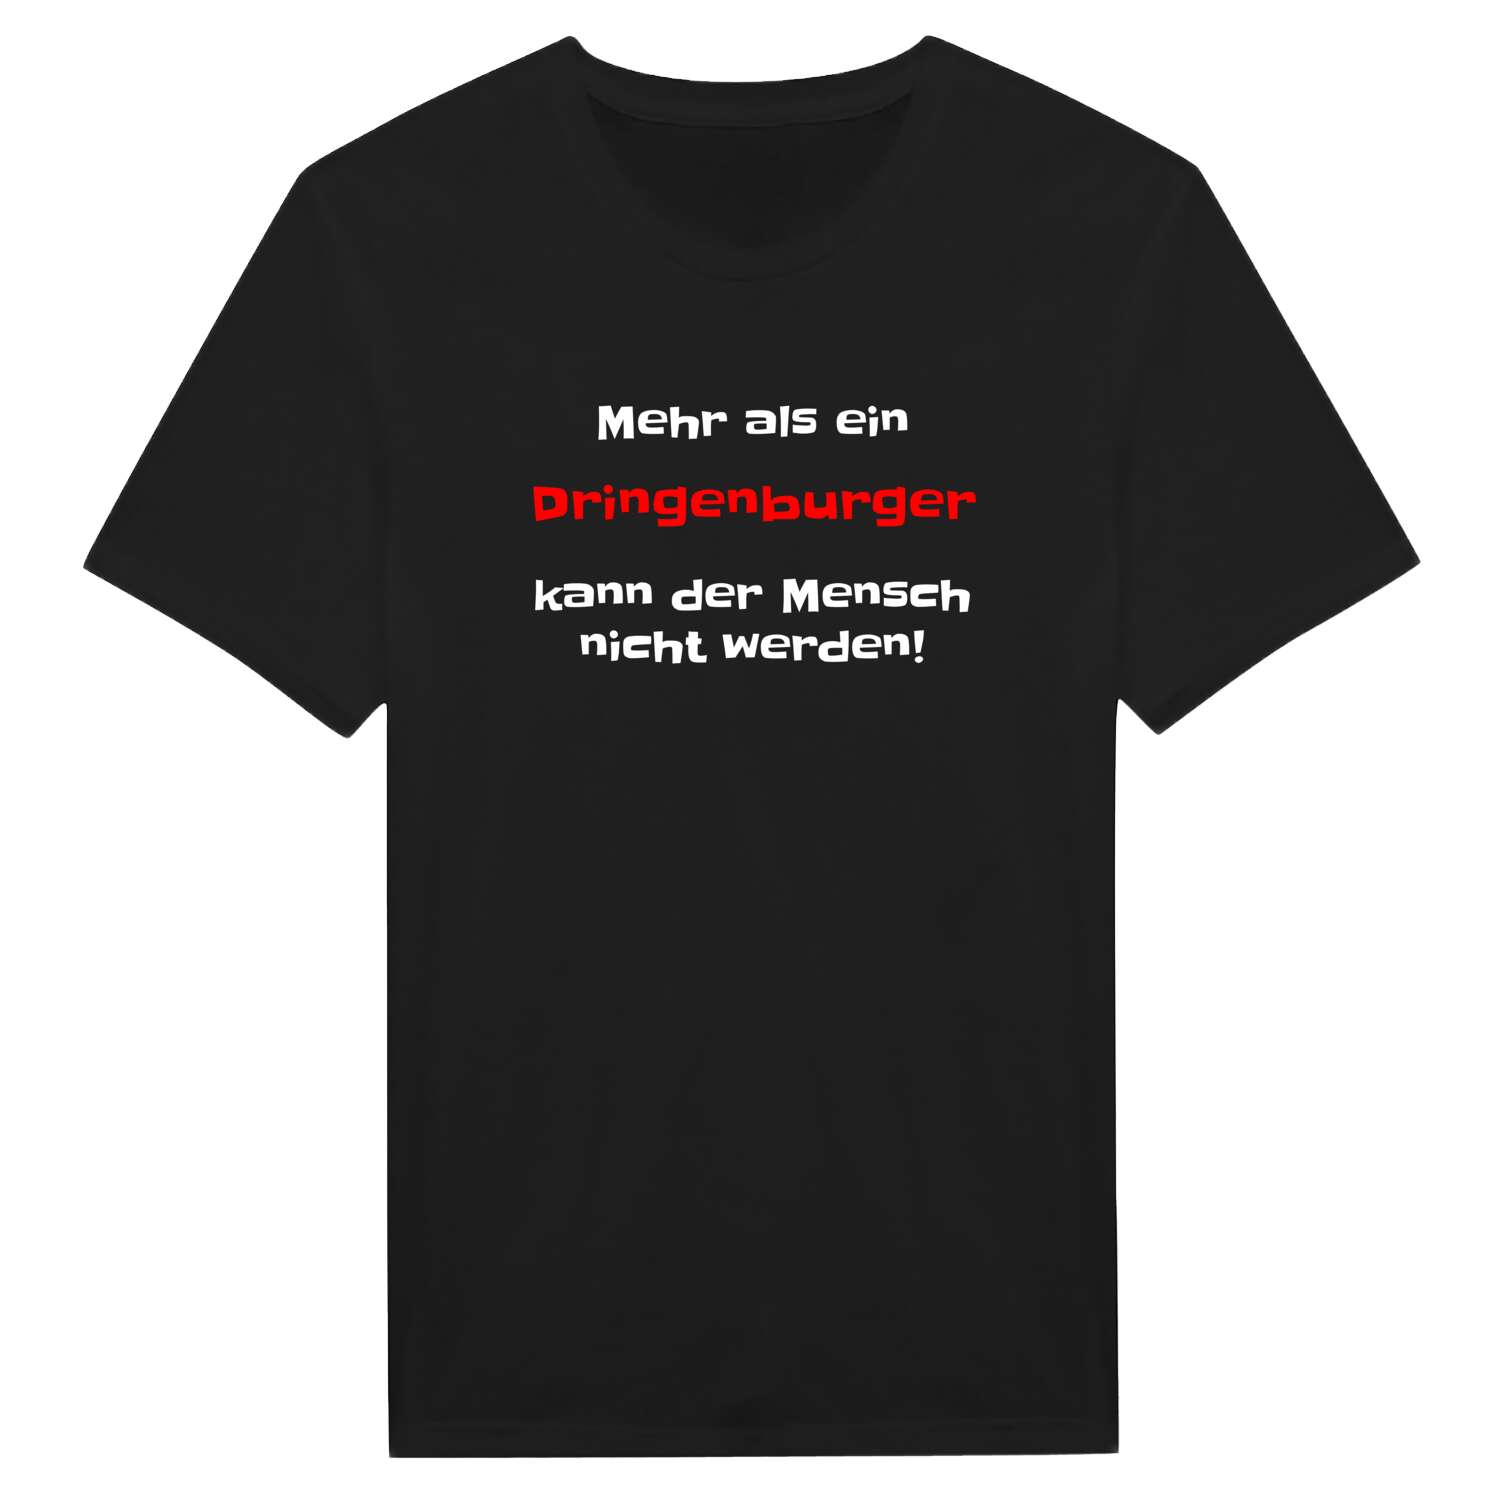 Dringenburg T-Shirt »Mehr als ein«